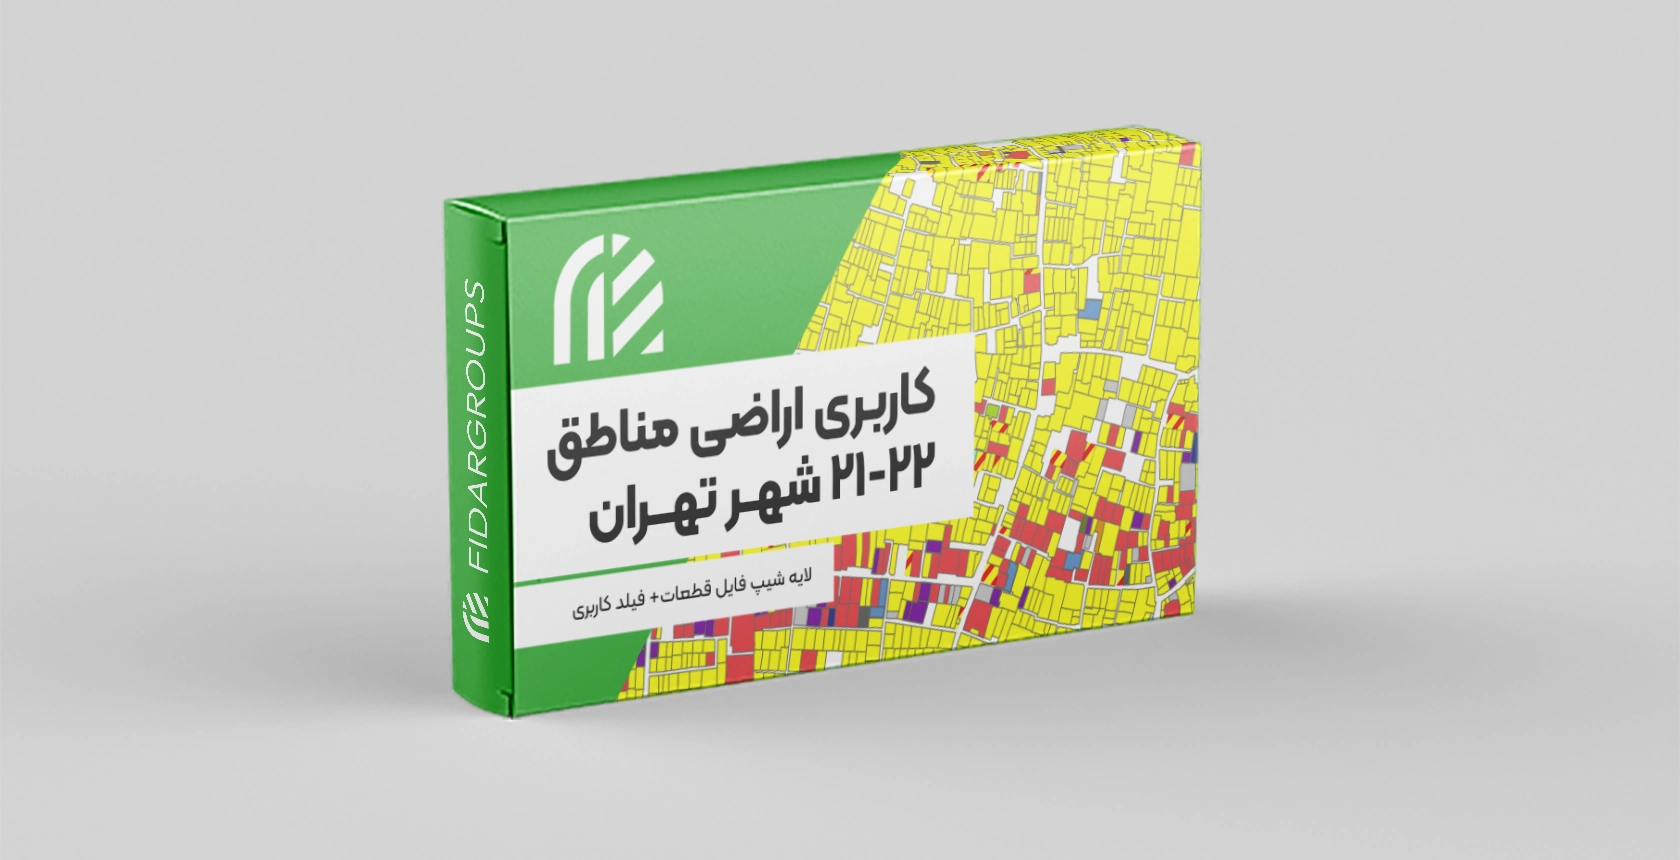 کاربری اراضی منطقه 21 و 22 تهران